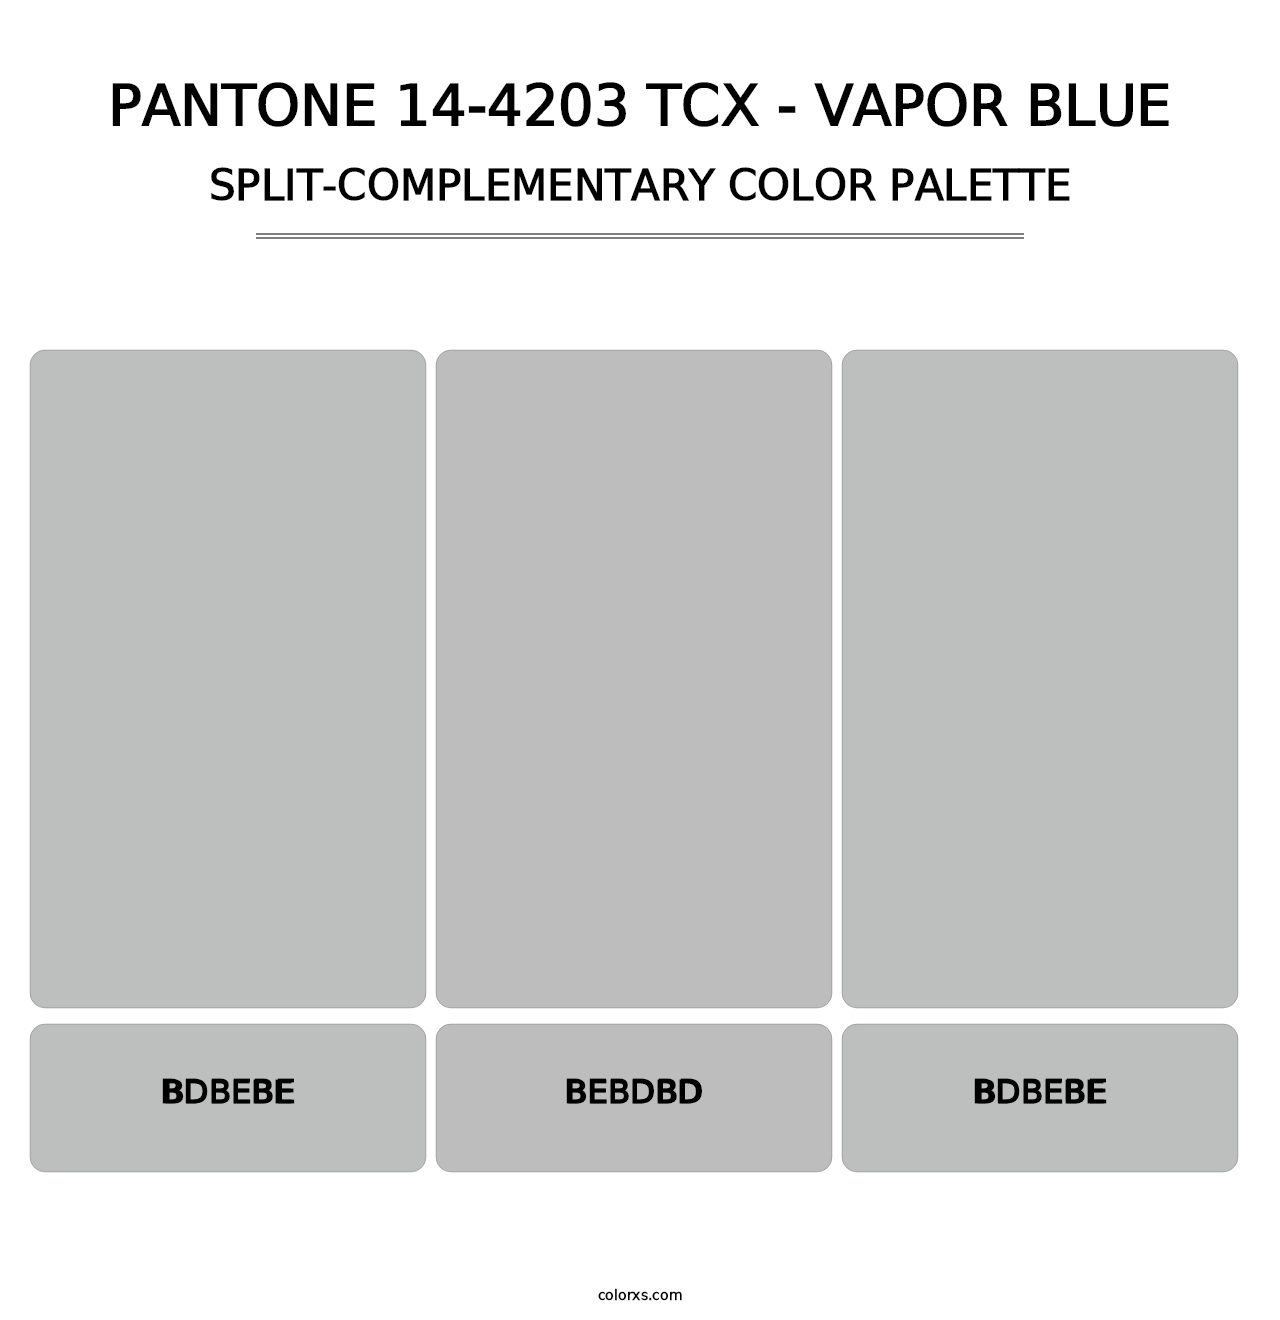 PANTONE 14-4203 TCX - Vapor Blue - Split-Complementary Color Palette